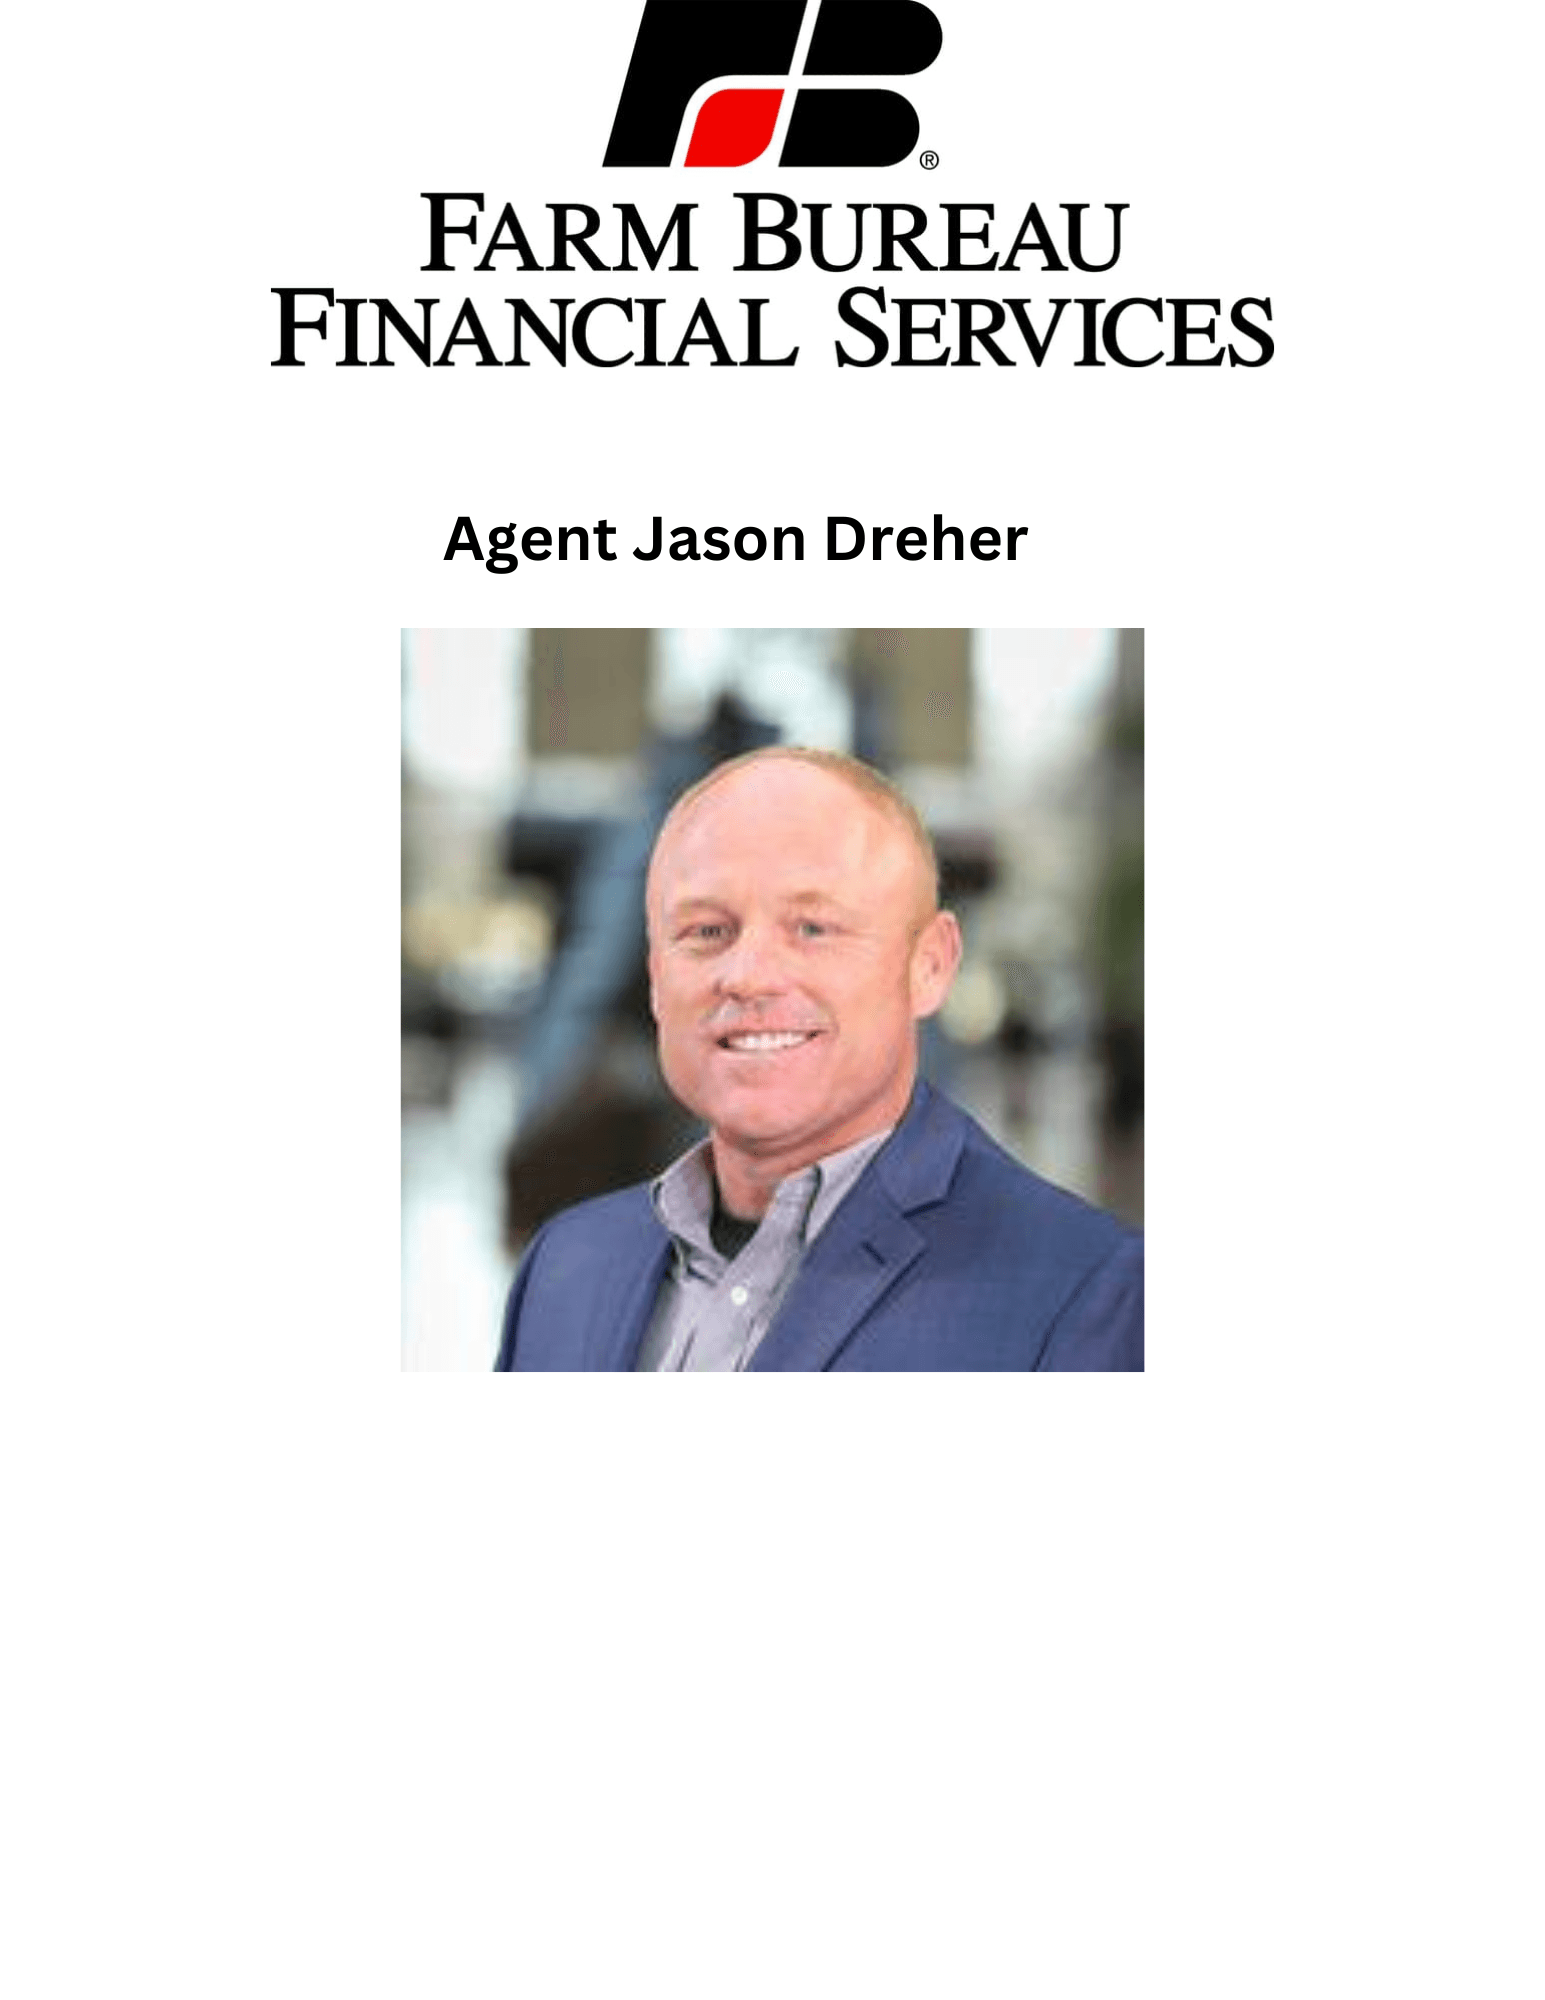 Farm Bureau Financial Services-Agent Jason Dreher